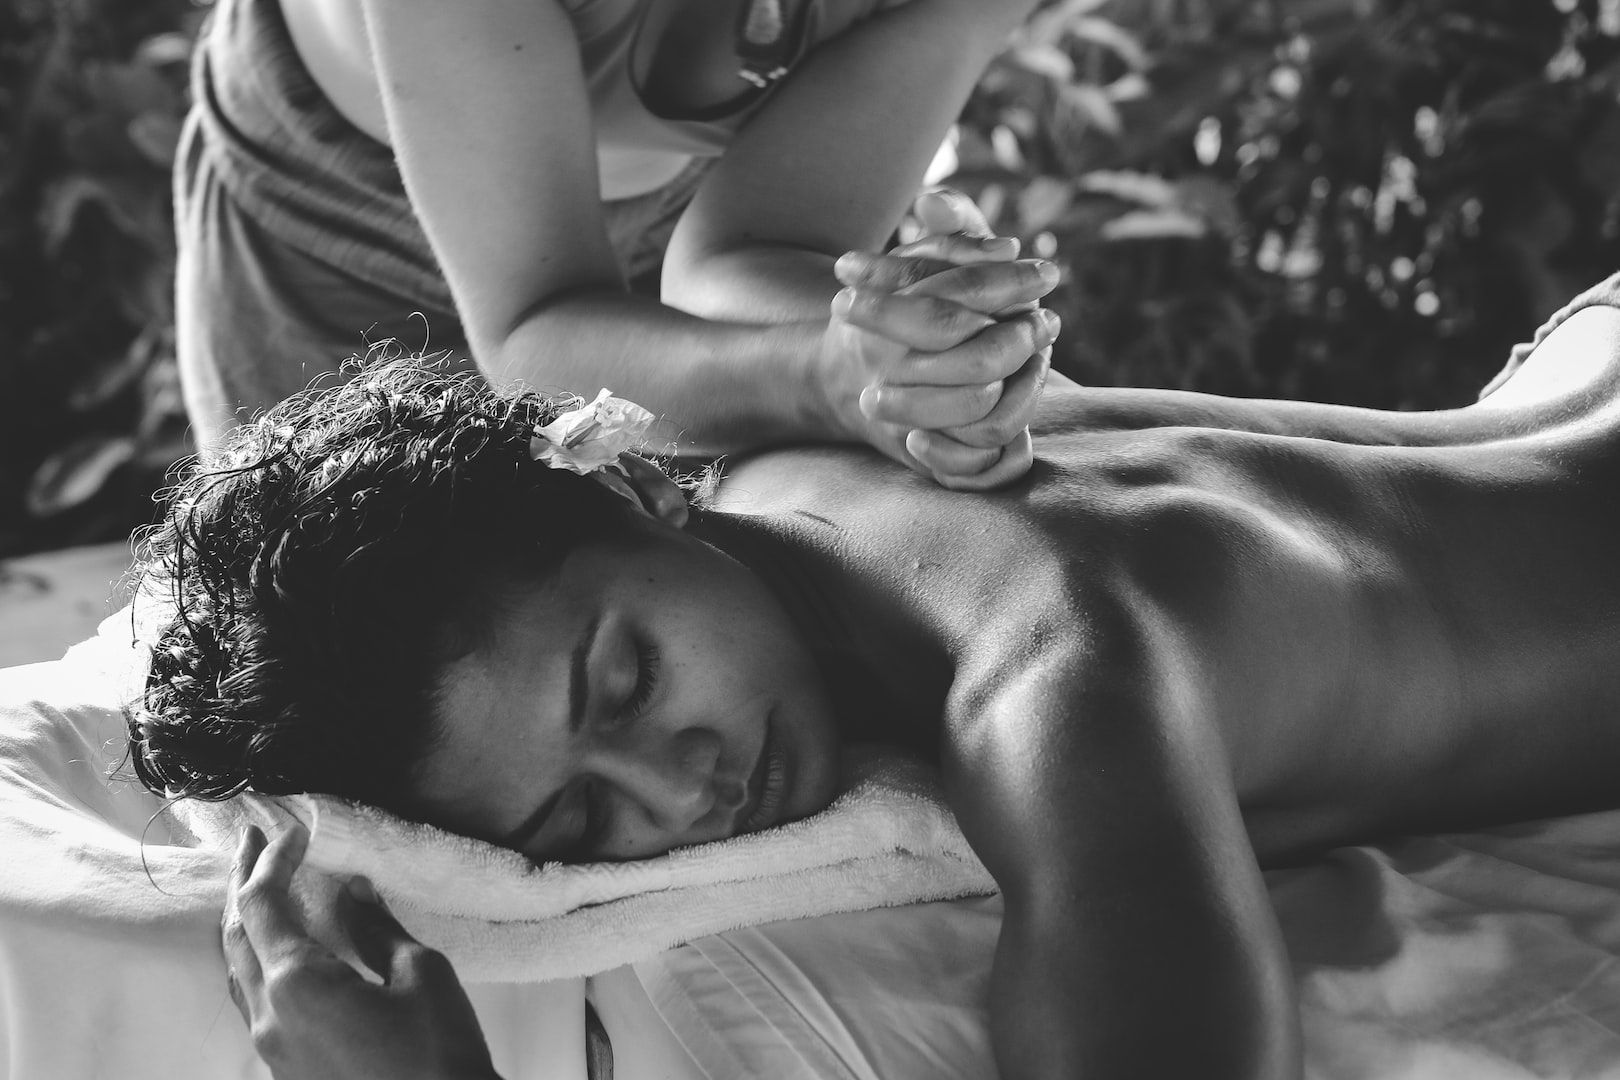 Klassisk massage TKtraining Sandviken. Boka massage om du har ryggvärk, nackbesvär eller axelbesvär. Lindrar huvudvärk och ökar blodcirkulation.